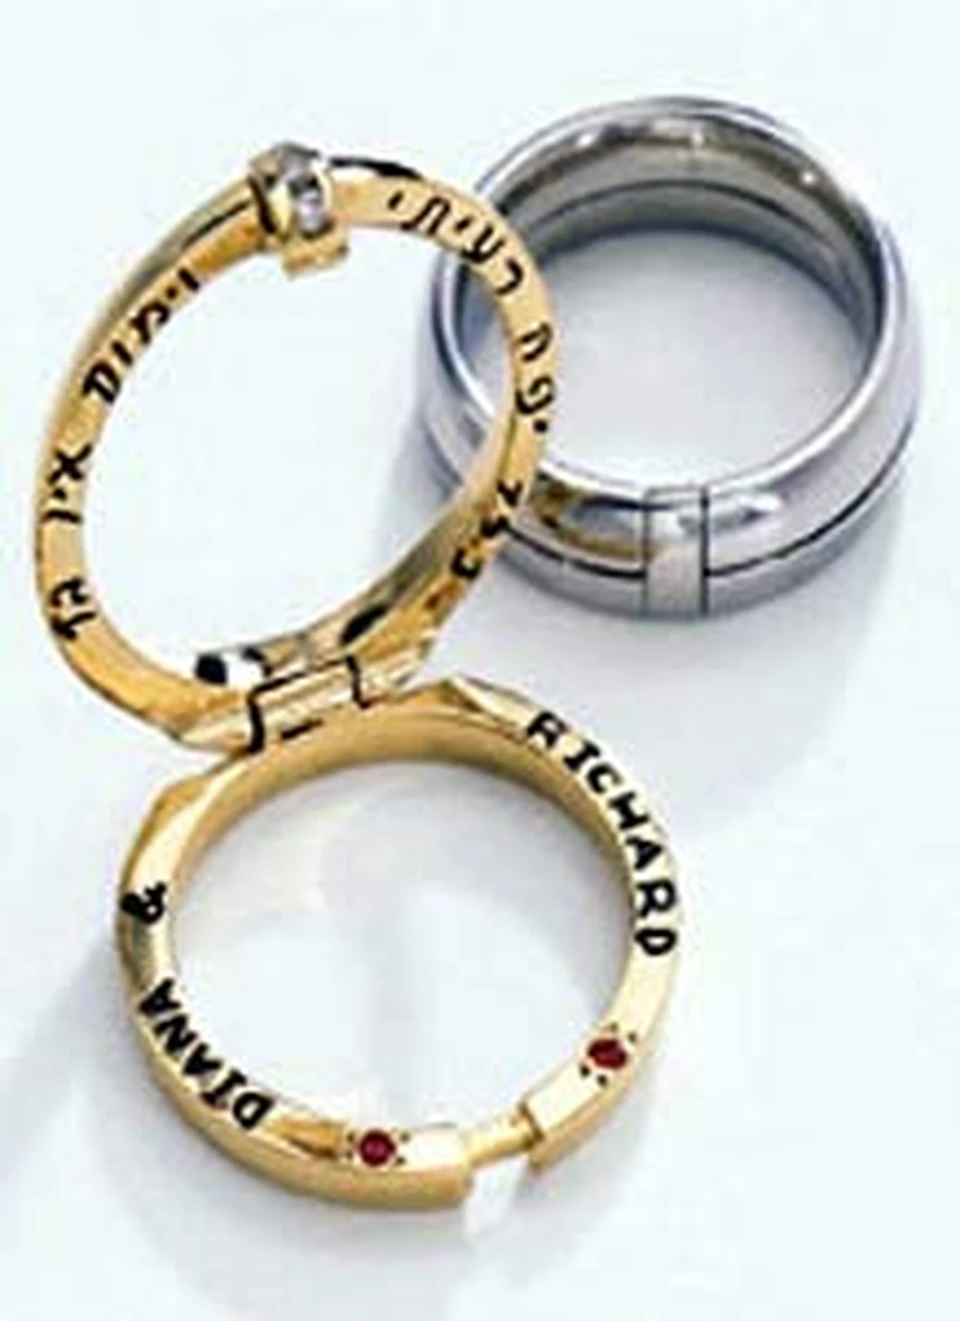 Когда-то эти кольца были Дианой и Ричардом.